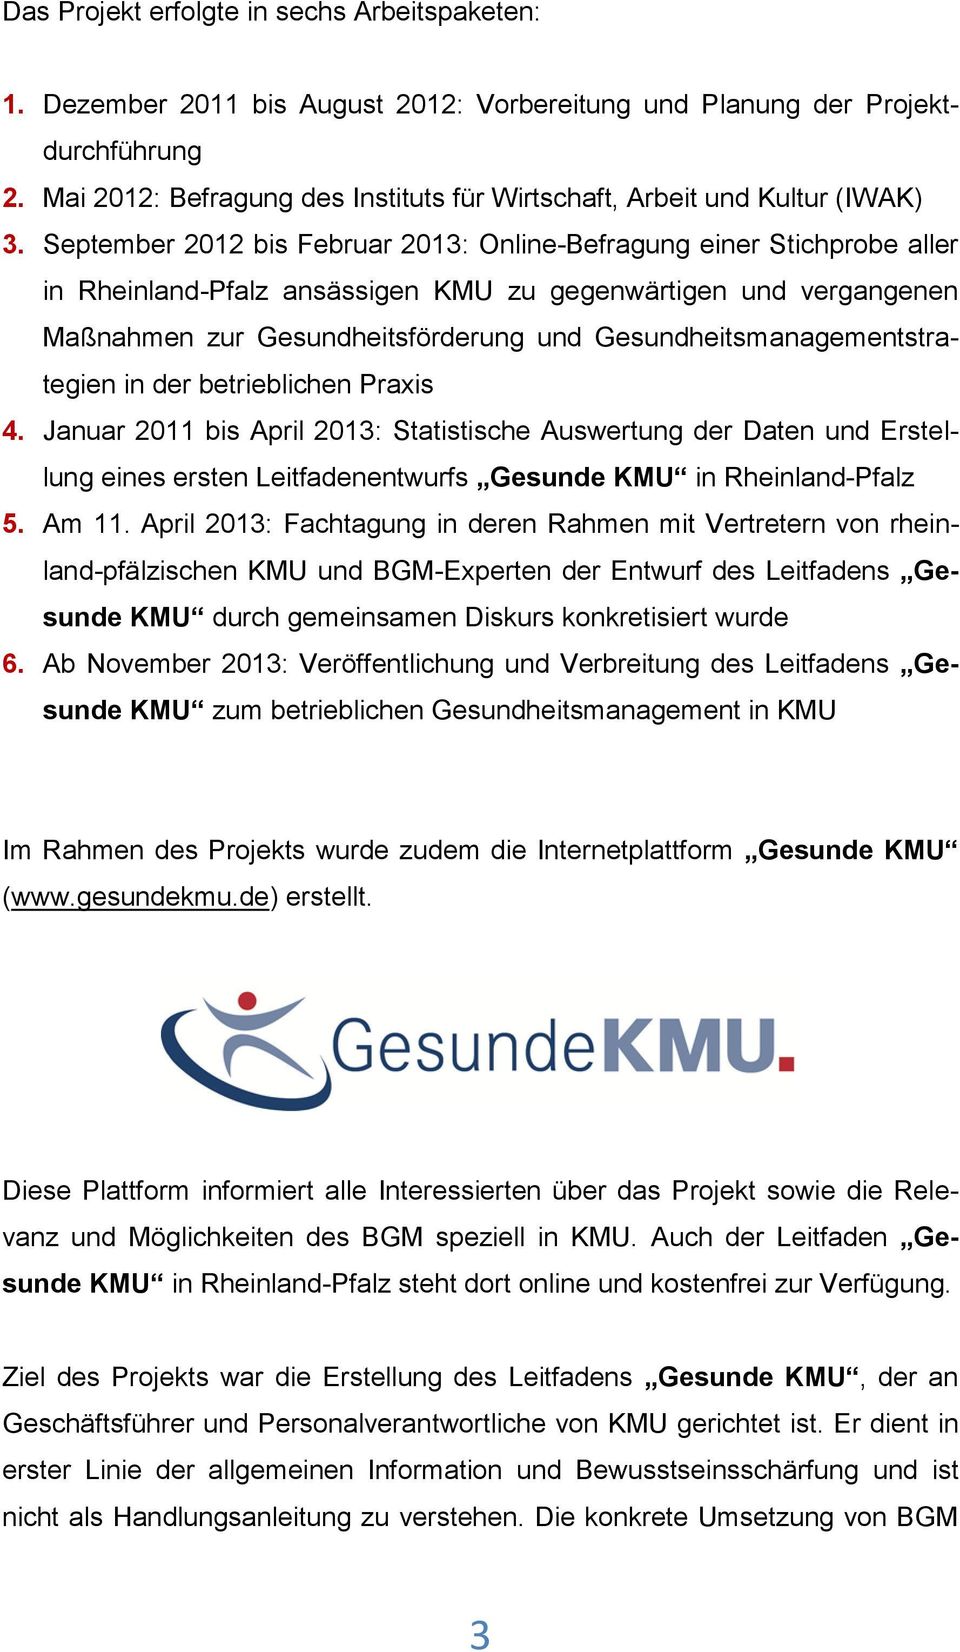 September 2012 bis Februar 2013: Online-Befragung einer Stichprobe aller in Rheinland-Pfalz ansässigen KMU zu gegenwärtigen und vergangenen Maßnahmen zur Gesundheitsförderung und